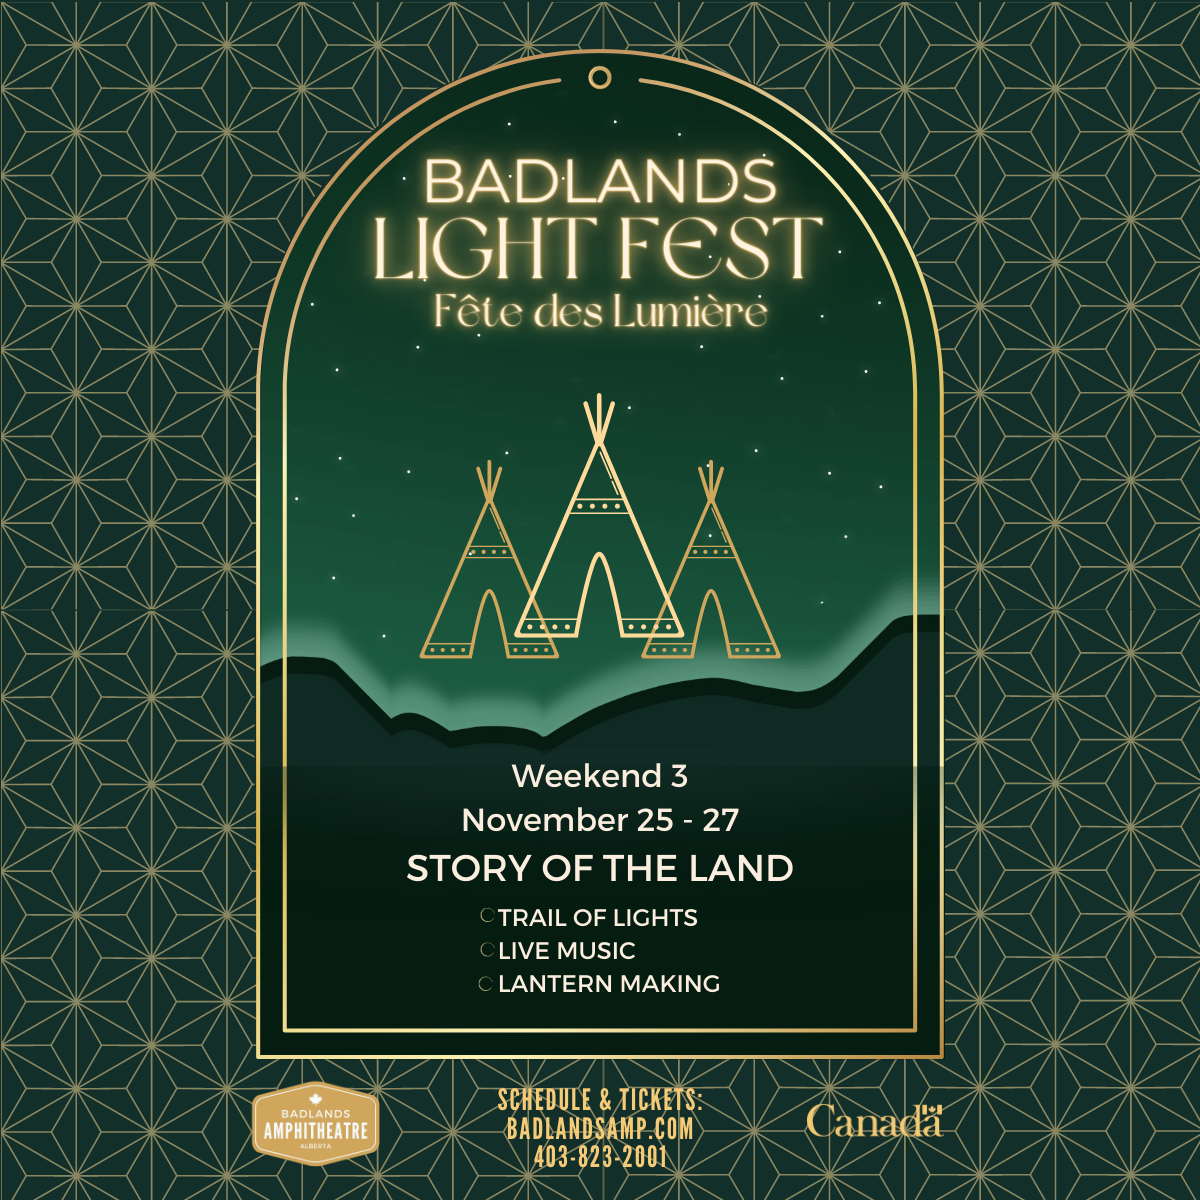 2022 Badlands Lightfest: Weekend 3